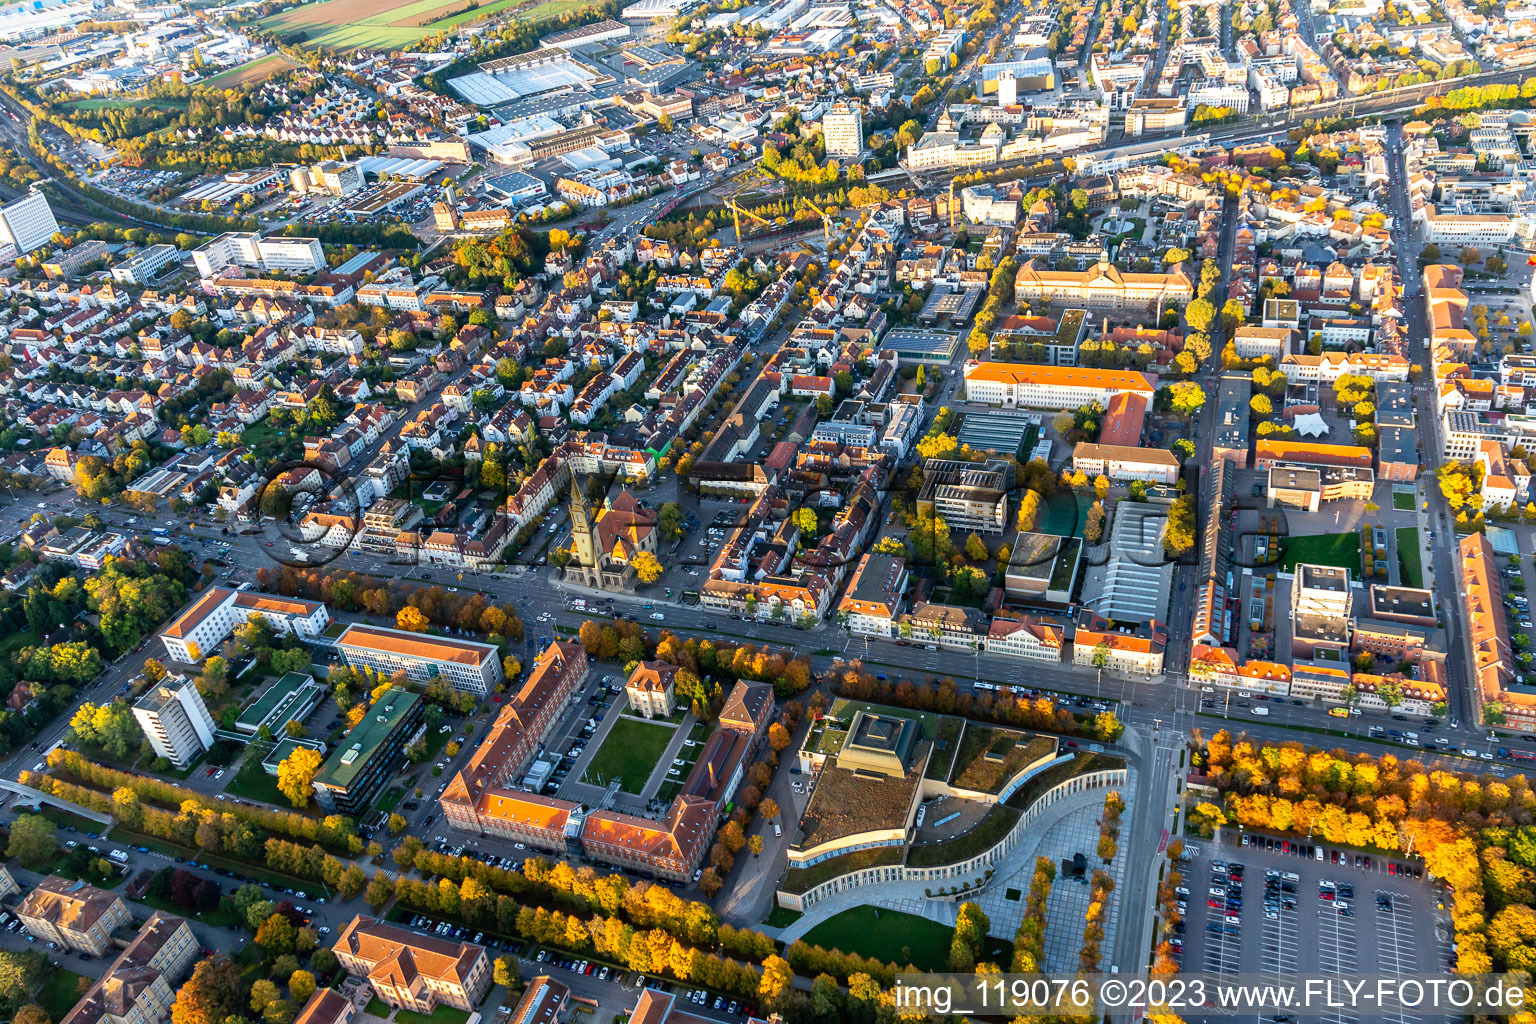 Vue aérienne de Salle du forum dans le parc du château à Ludwigsburg dans le département Bade-Wurtemberg, Allemagne